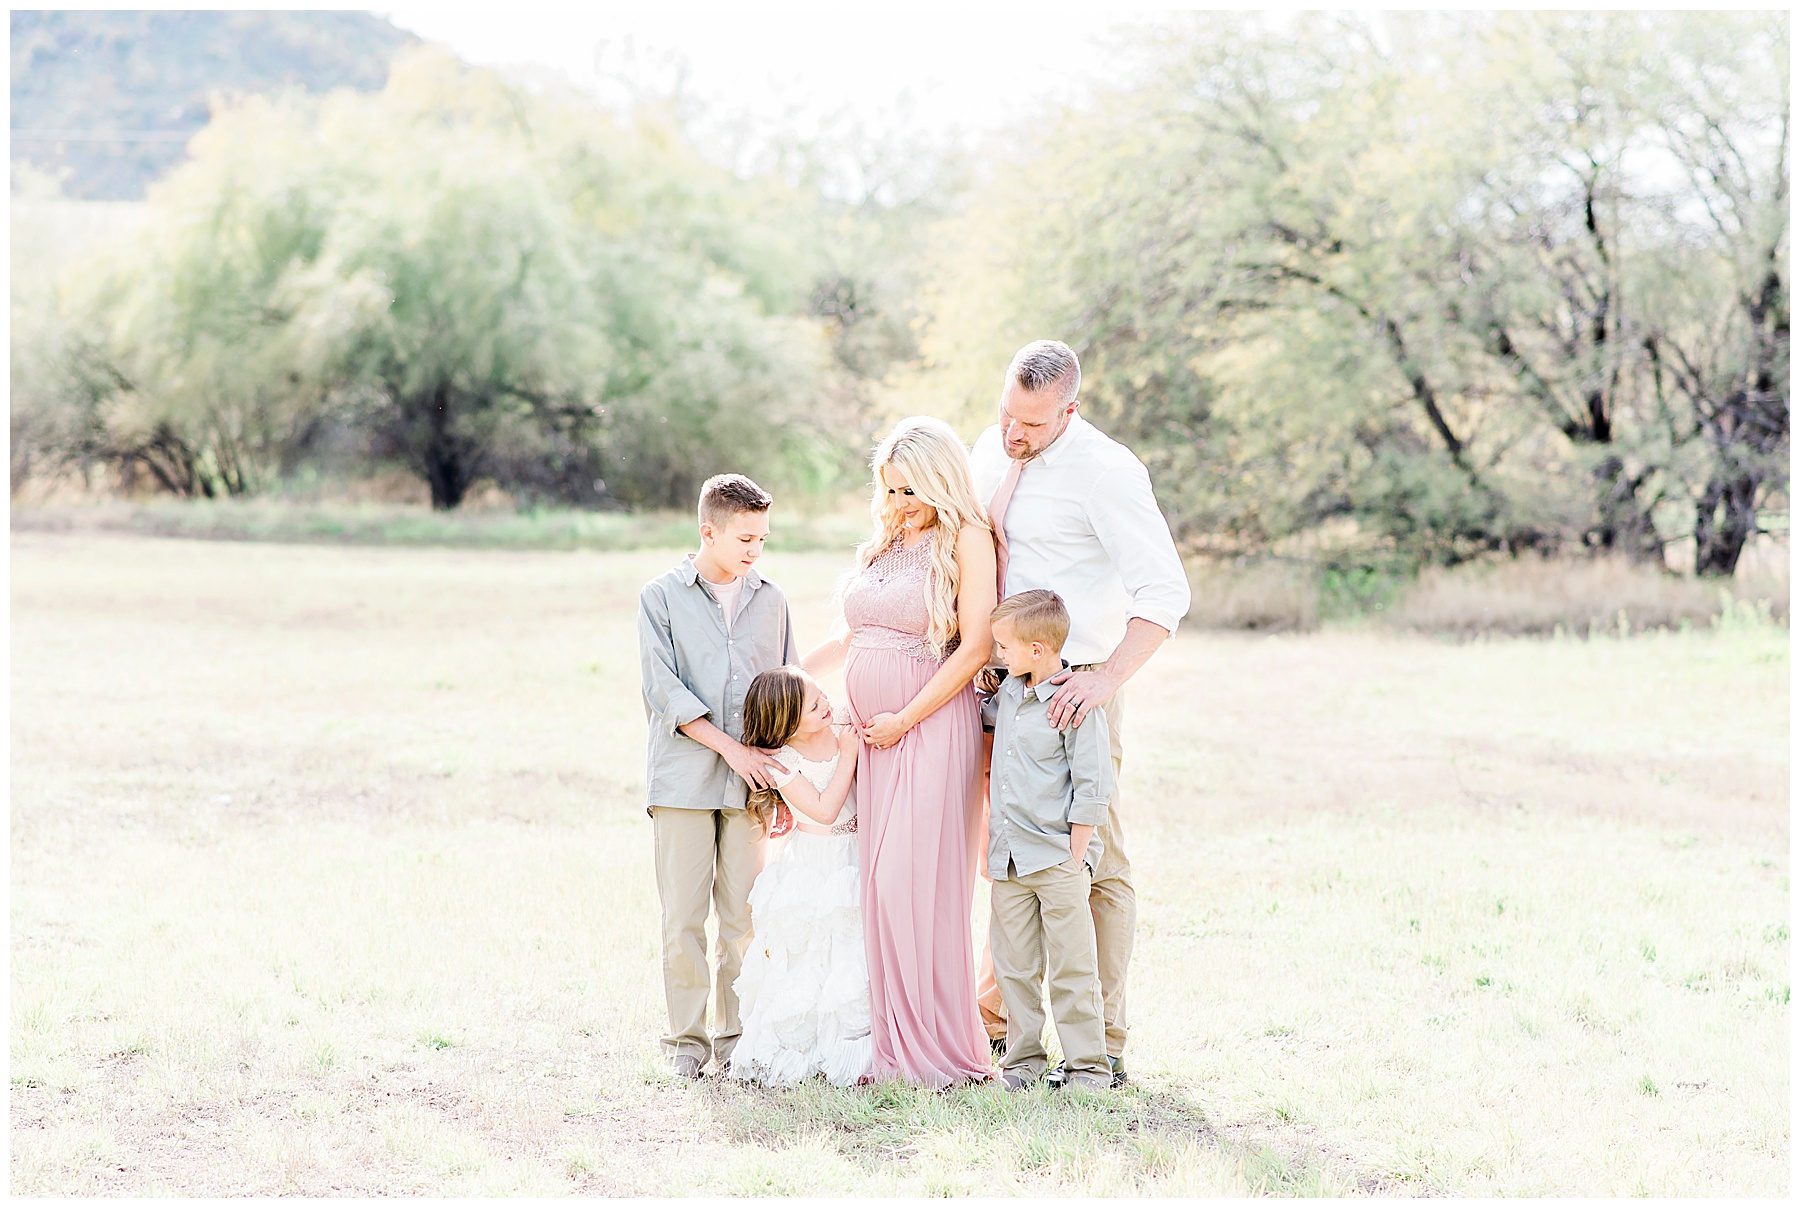 Cooper's-Family-Maternity-Photography-Glendale-Arizona-Ashley-Flug-Photography41-1.jpg